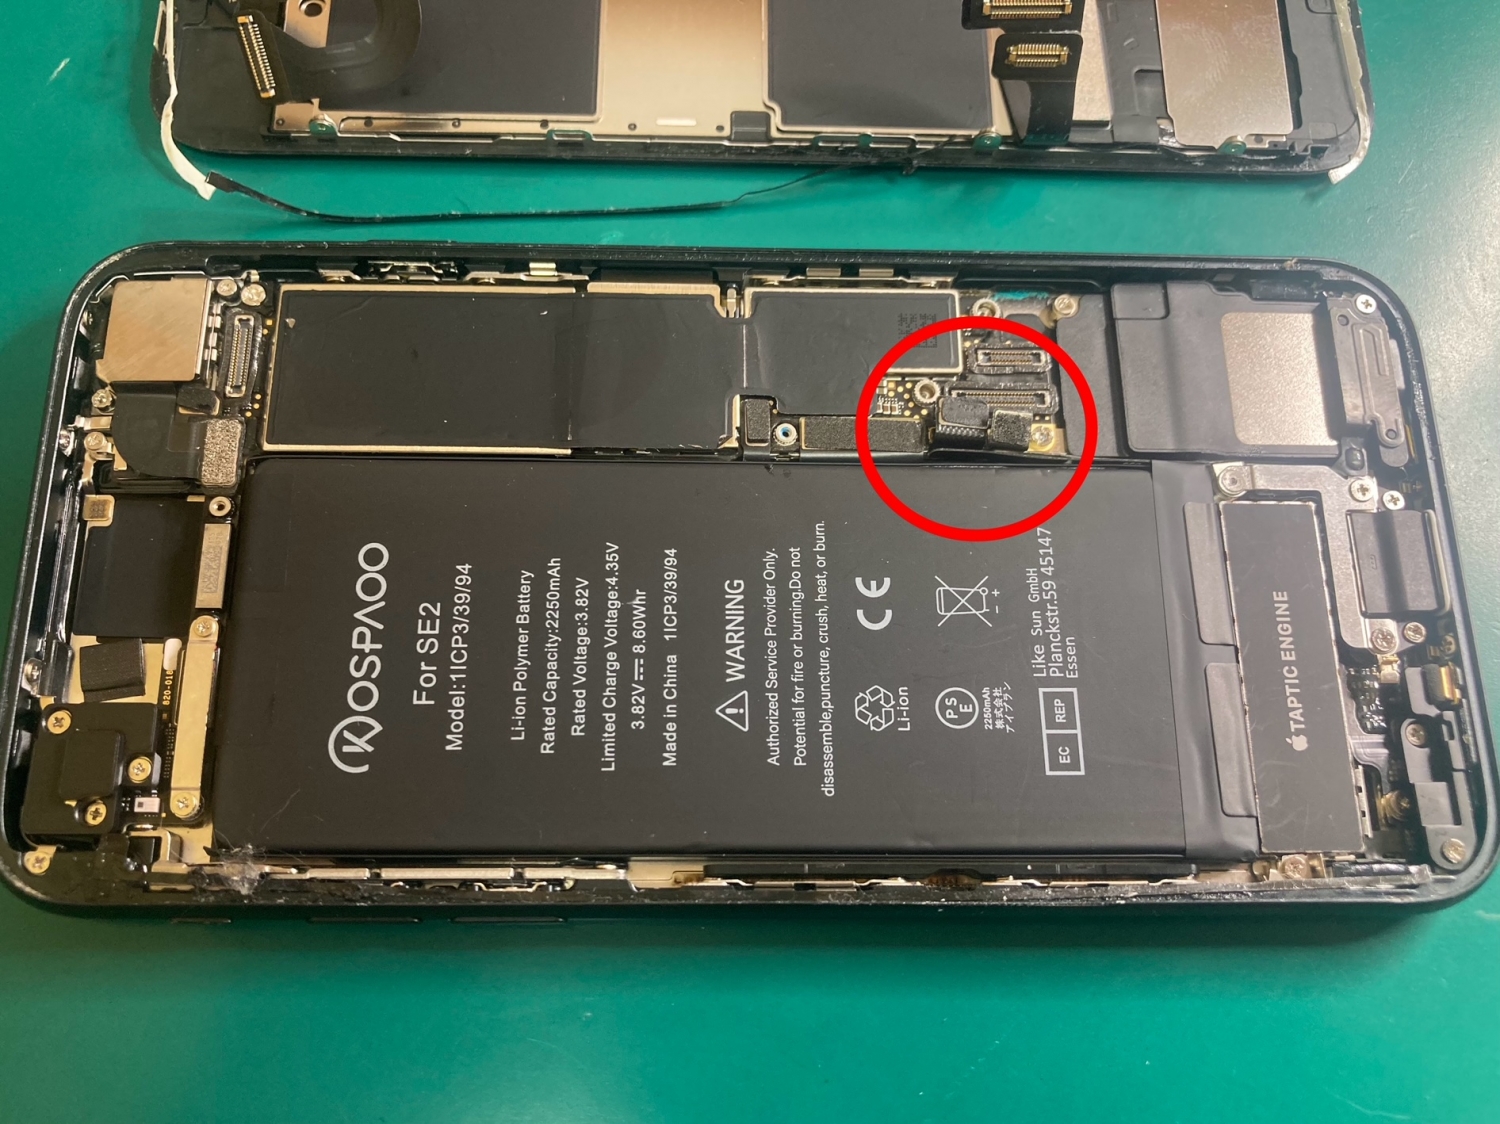 自分でバッテリー交換をした後、不具合が発生してしまったiPhone修理のご相談をいただきました。